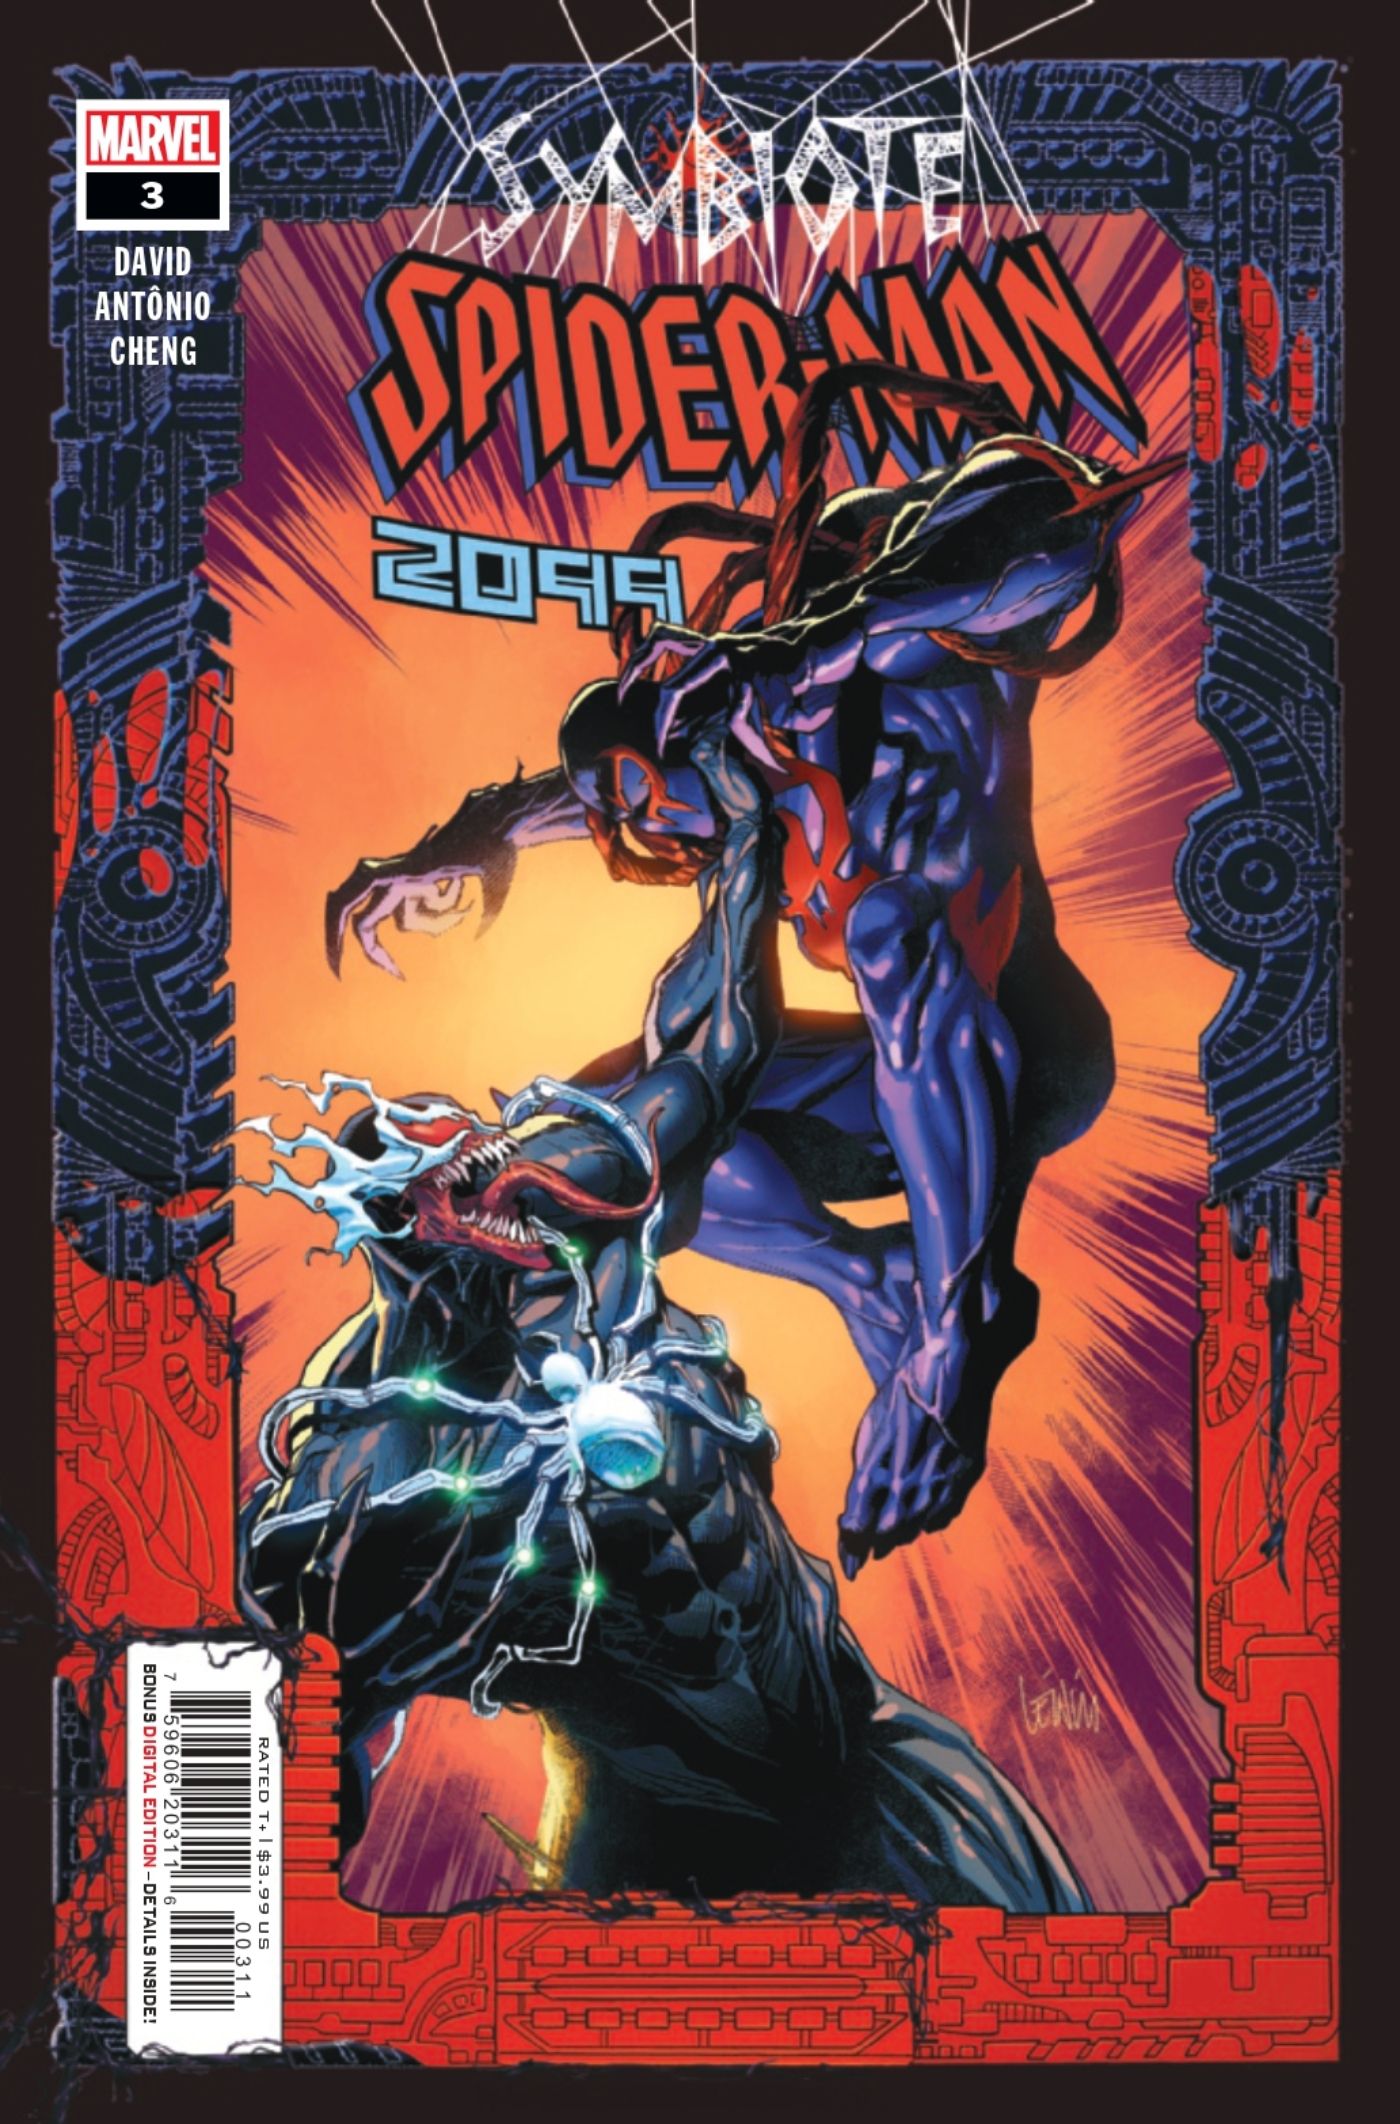 Symbiote Spider-Man 2099 #3 cover featuring Spider-Man fighting Venom.